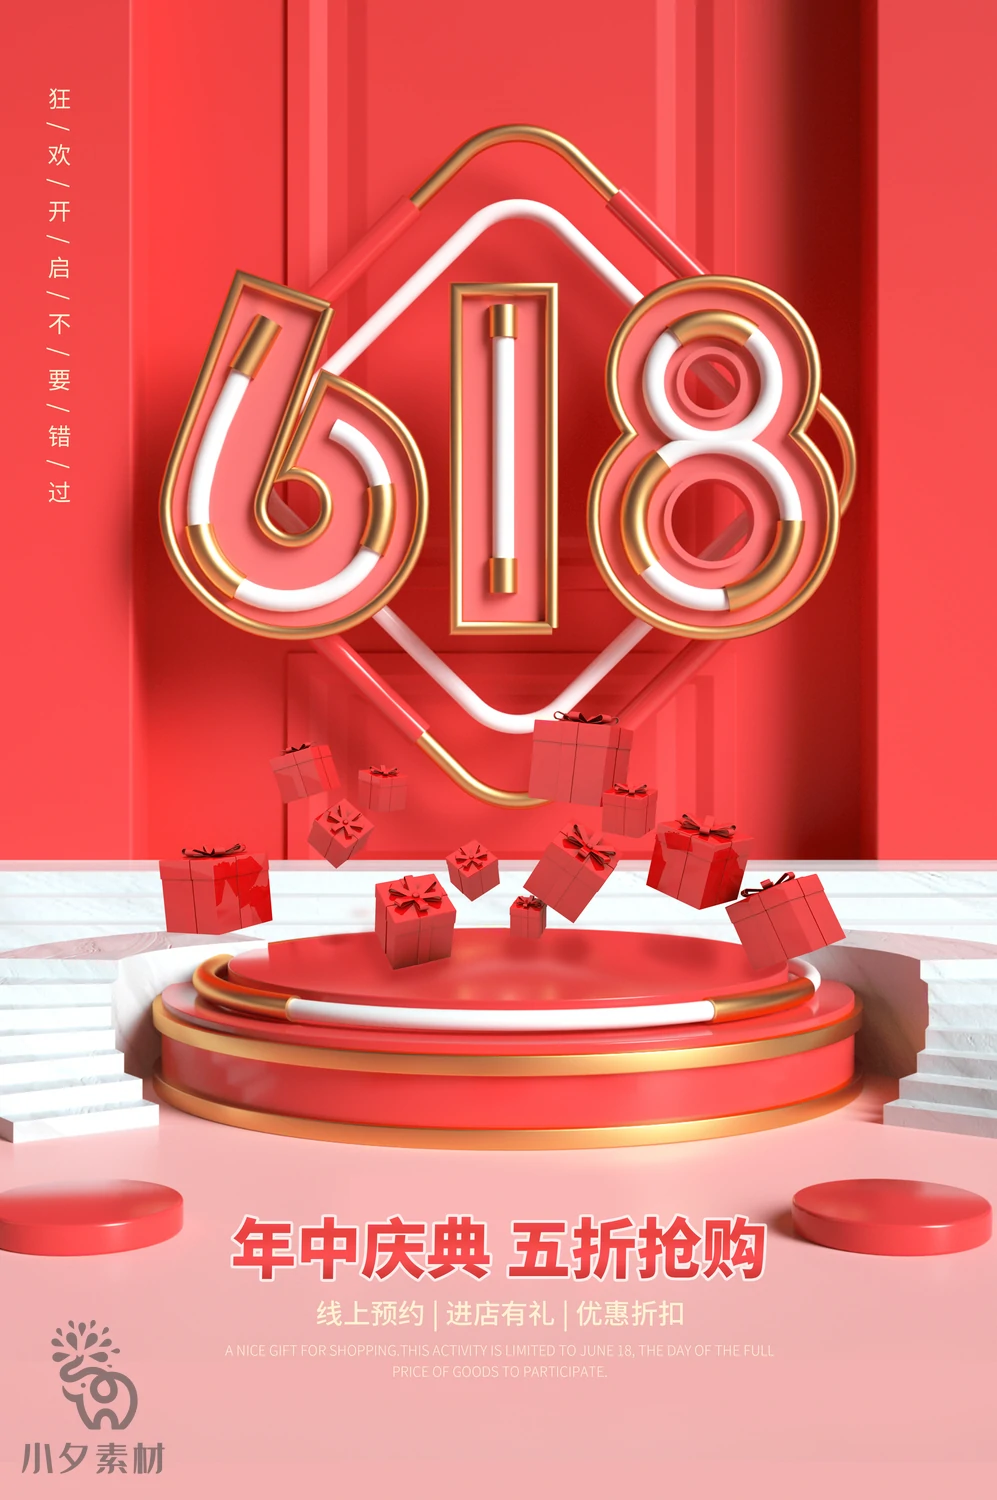 电商折扣促销618大促直播宣传海报模板PSD分层设计素材【006】